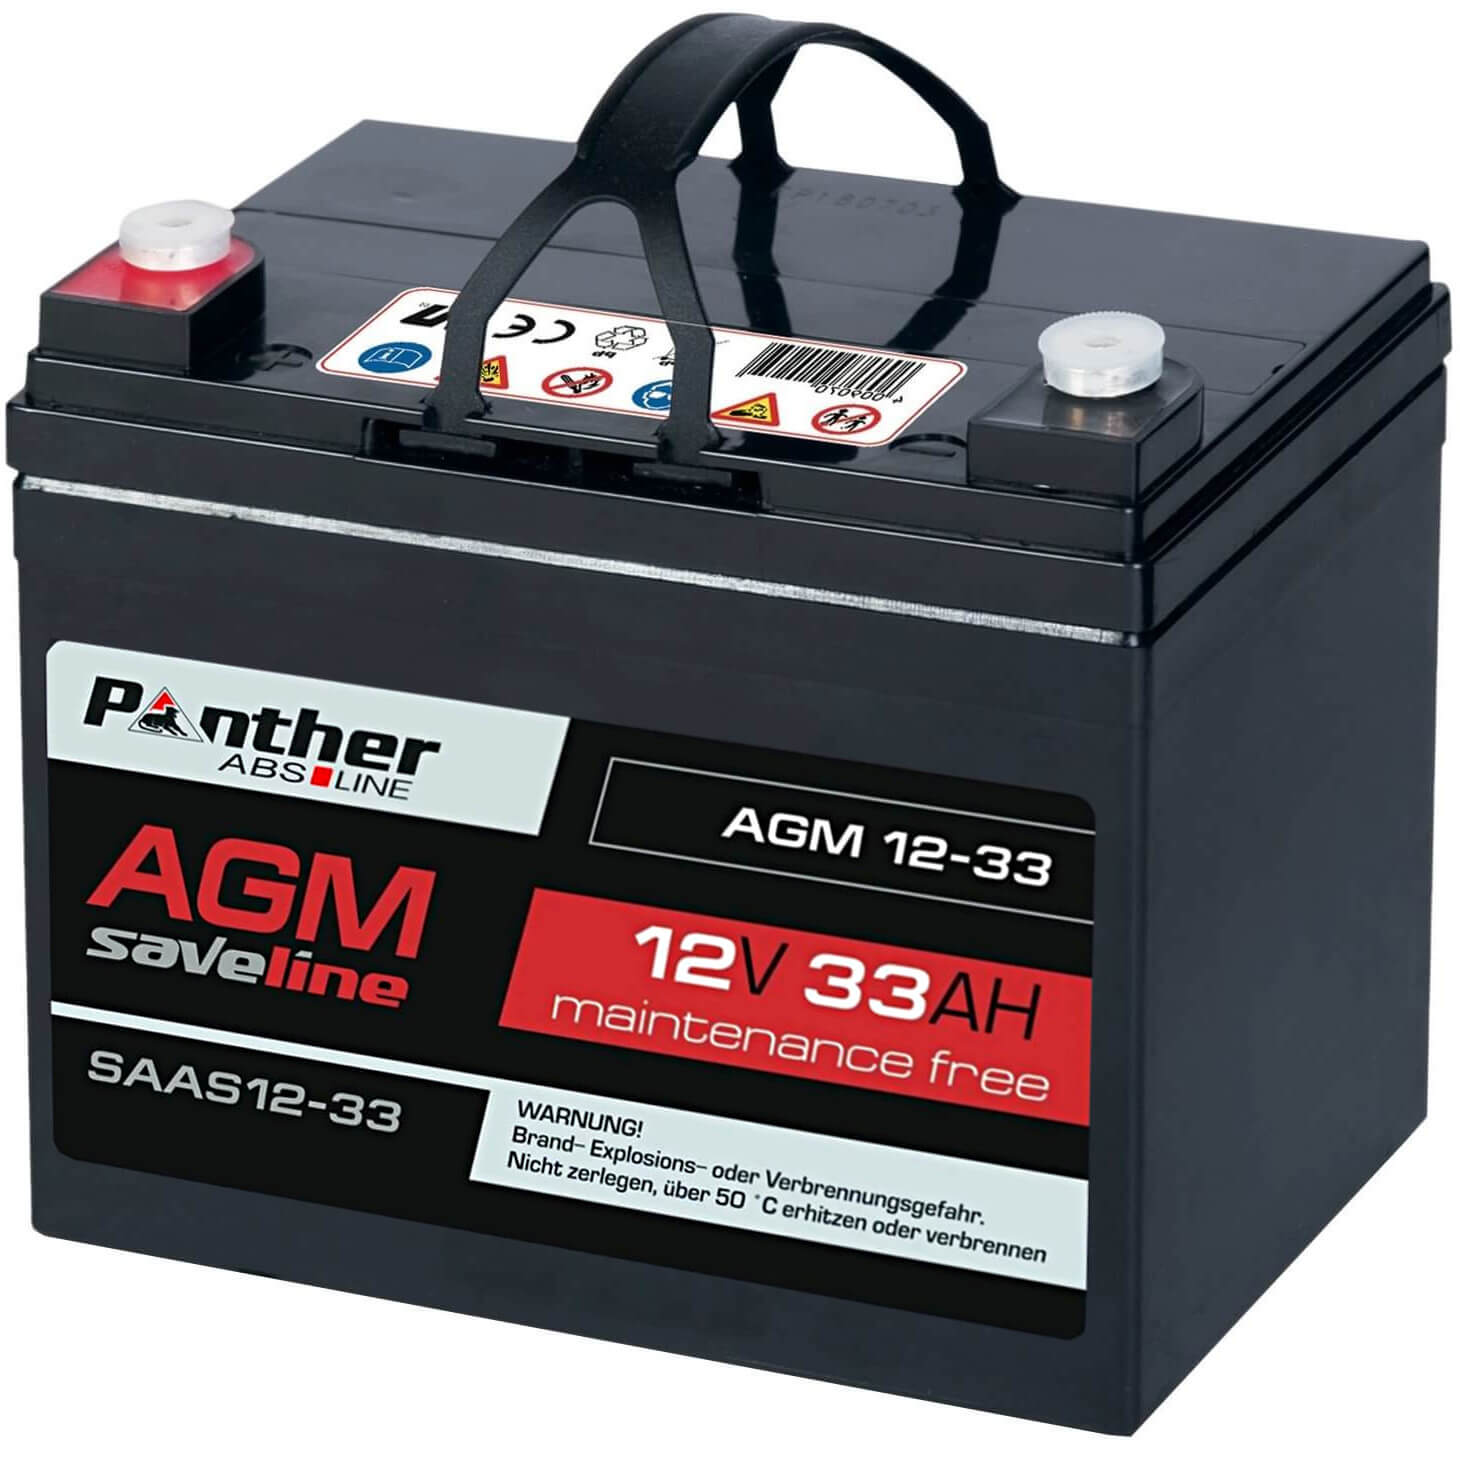 Panther Bleiakku AGM 12V 33Ah saveline Batterie